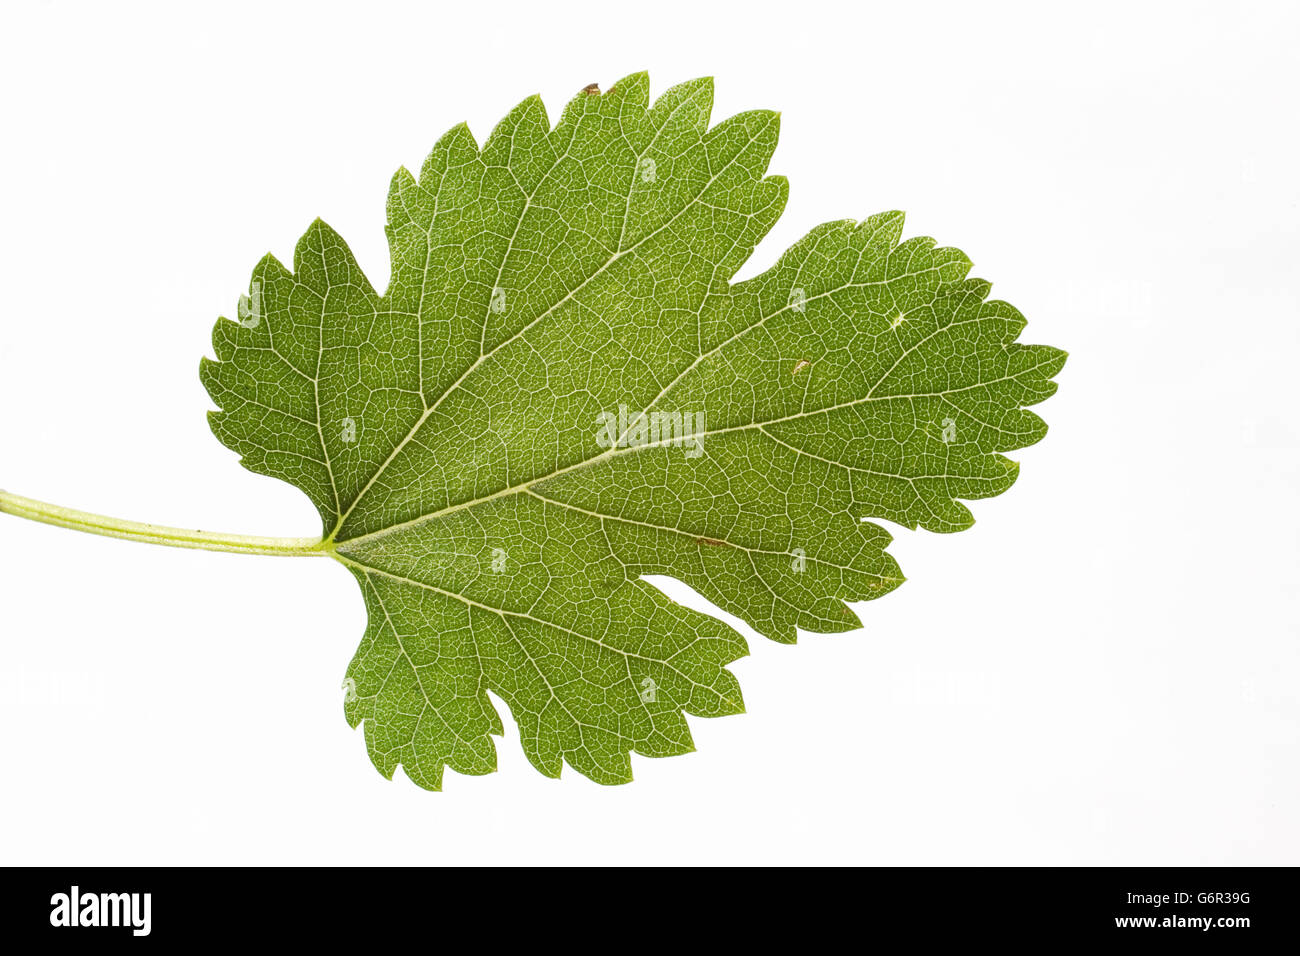 White Mulberry Tree, leaf, Bulgaria / (Morus alba) Stock Photo